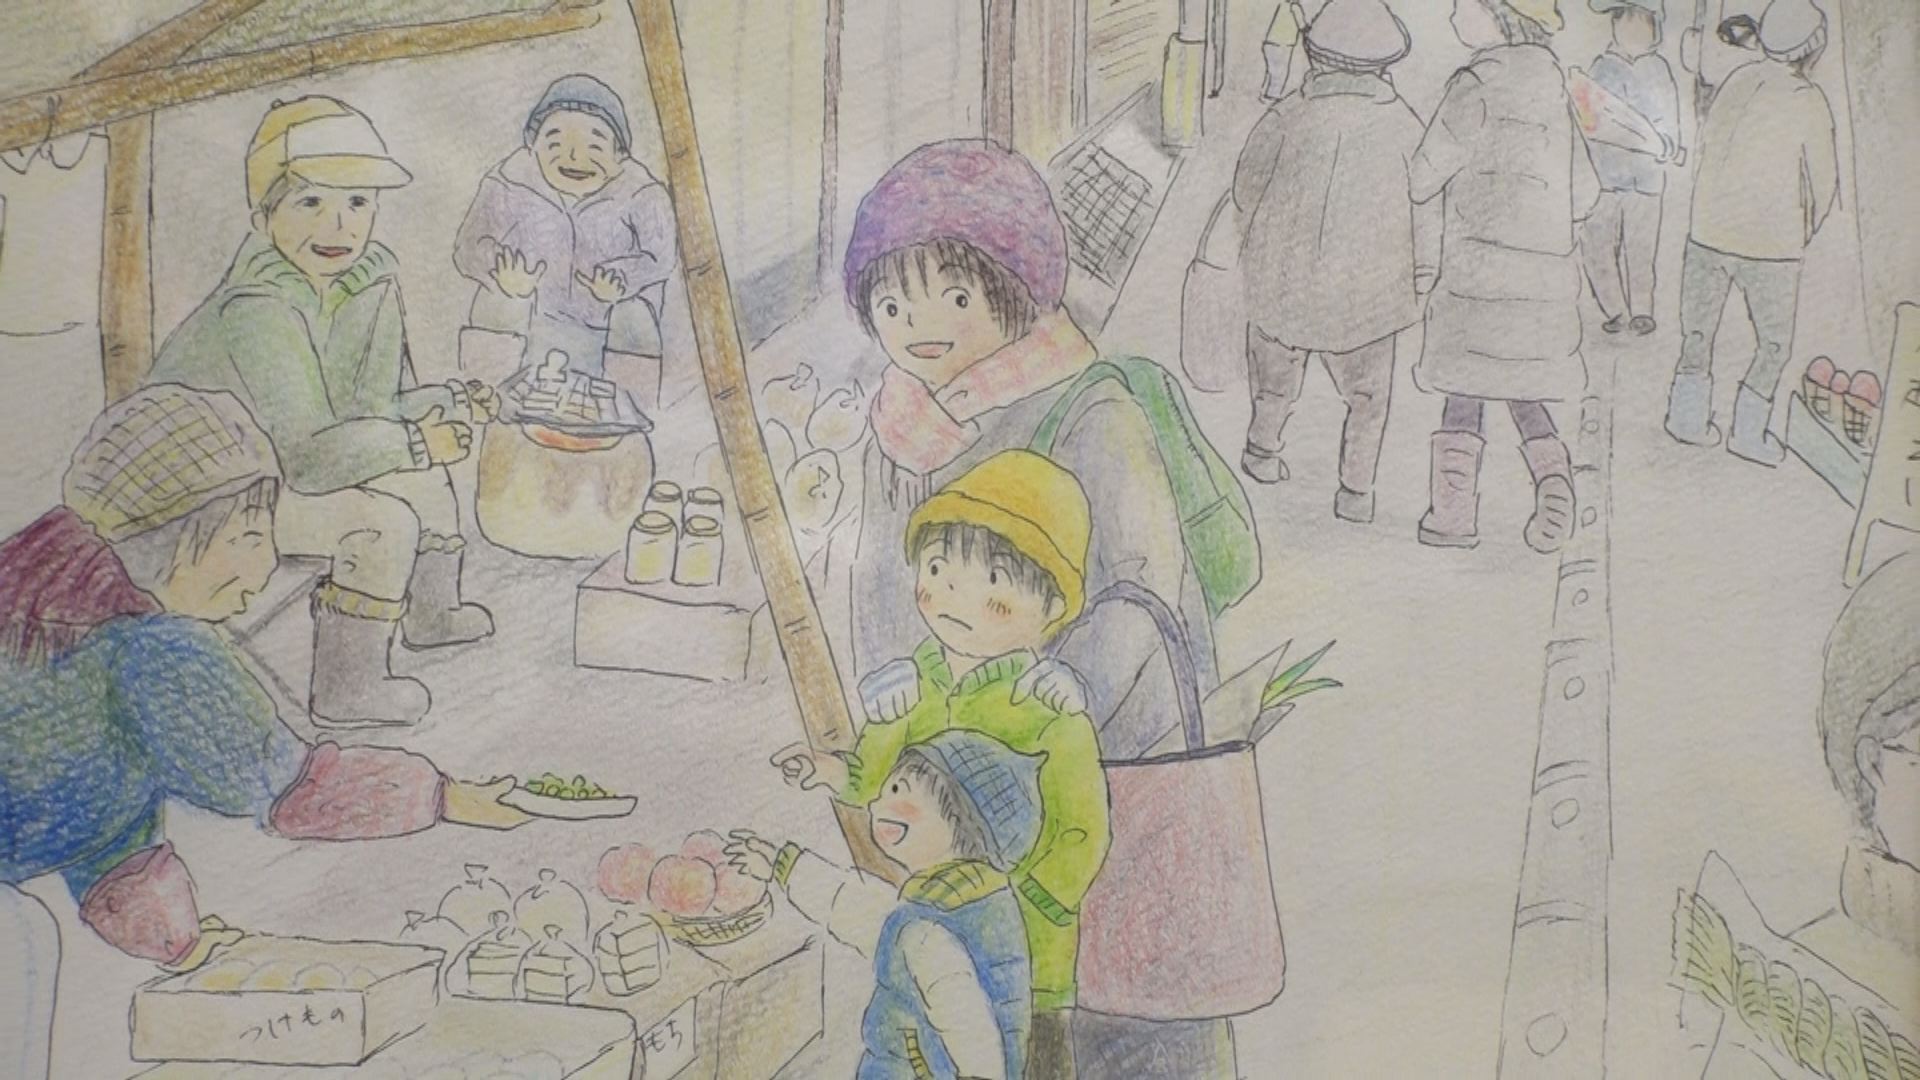 ママが見た雪国の暮らし 高田郵便局でイラスト展 ニュース 上越妙高タウン情報